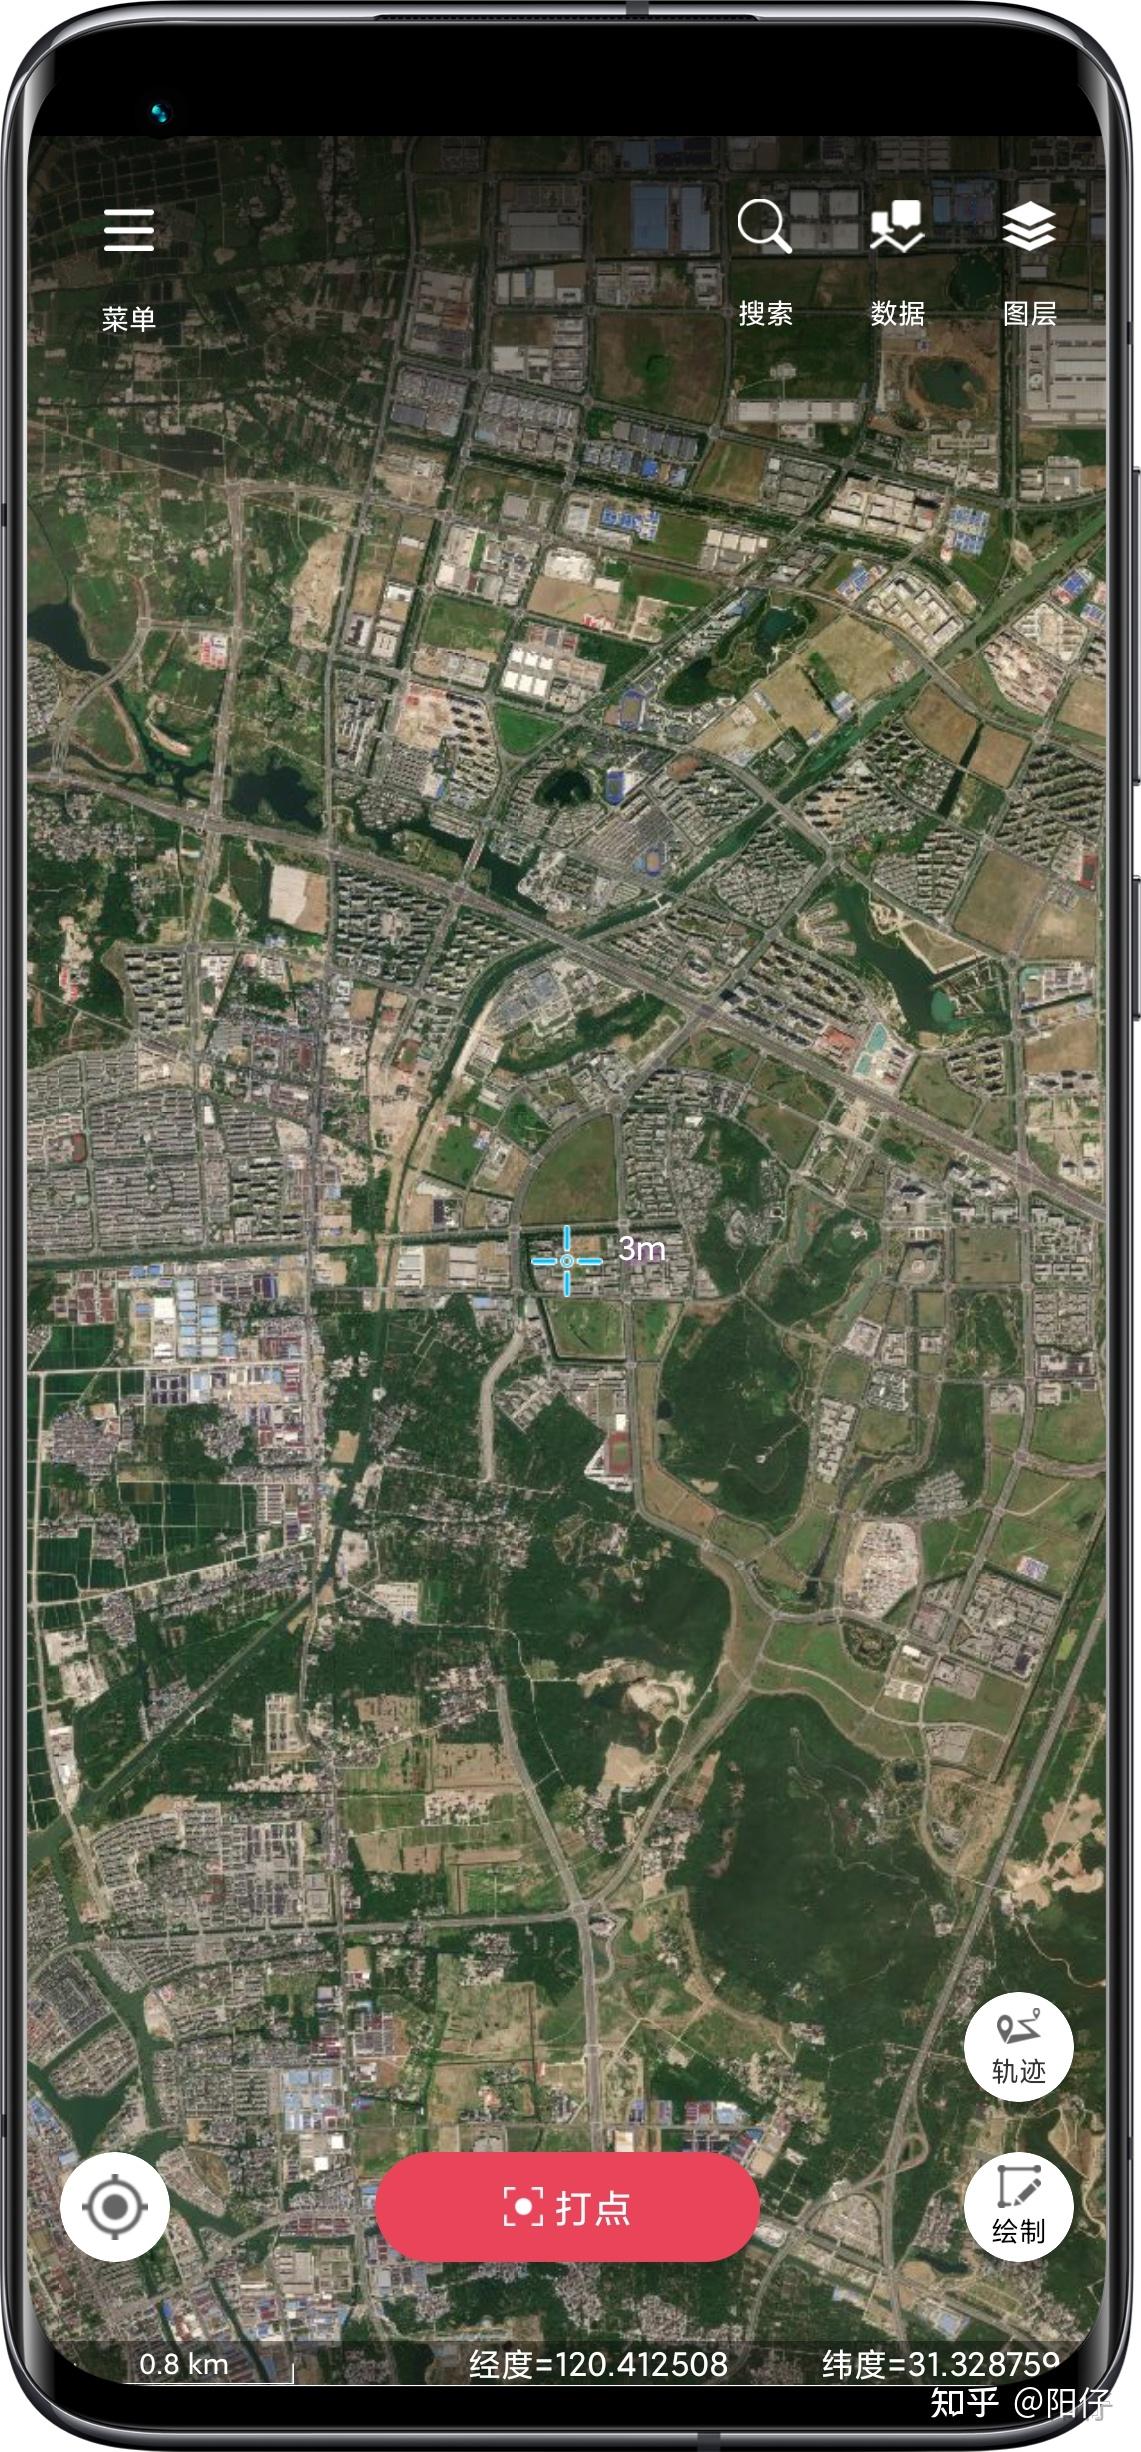 奥维地图不分版本，谷歌卫星地图的使用方法 2020年2月10日更新 - 通信工程设计与建设 - 通信人家园 - Powered by C114